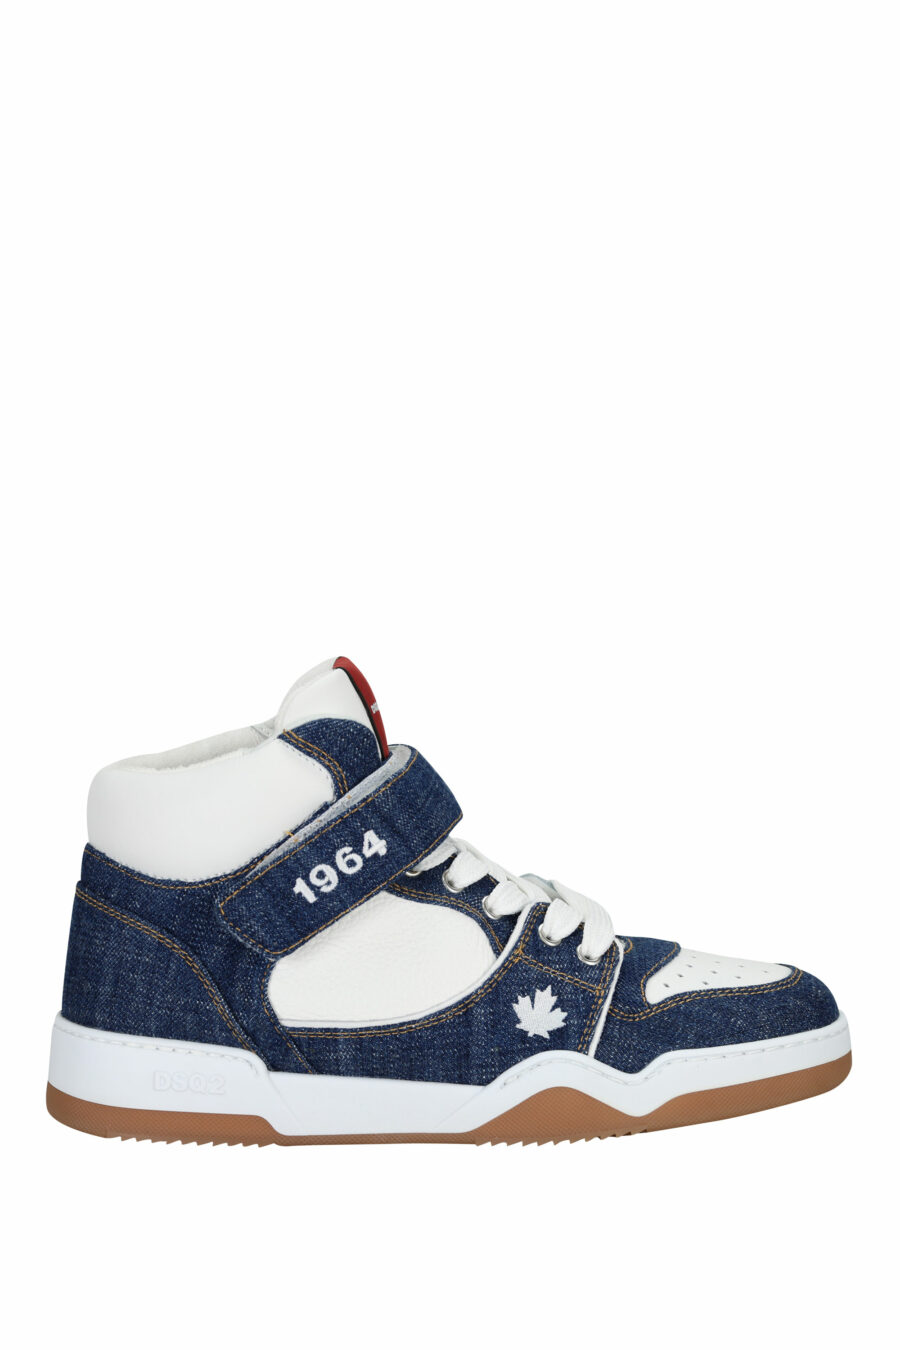 Zapatillas azules denim "spyker" blancas altas con logo - 8055777306079